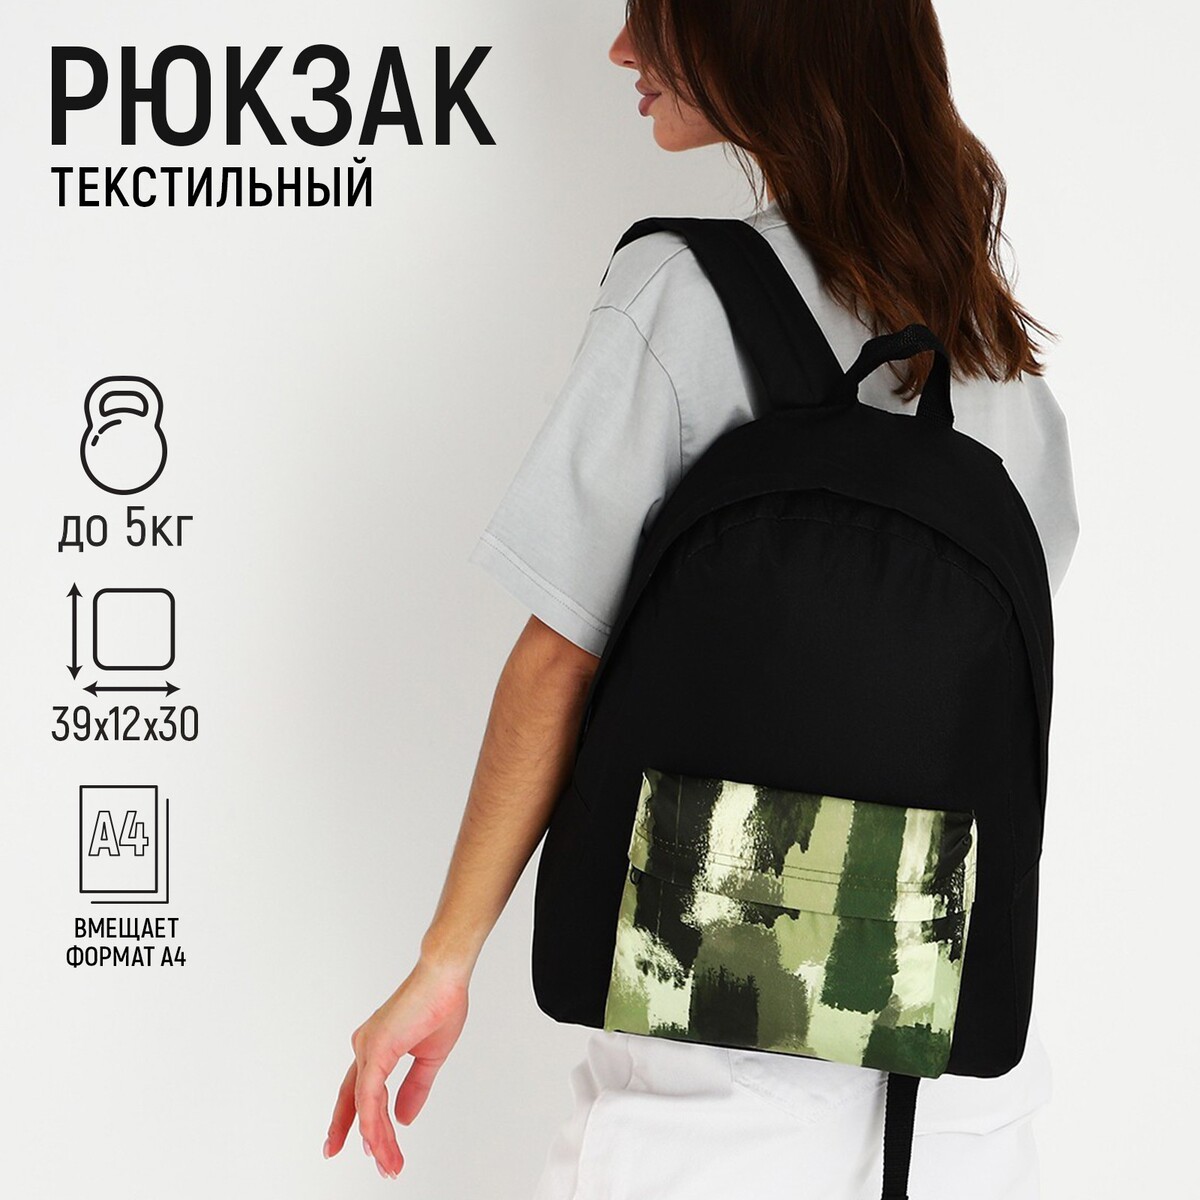 Рюкзак текстильный хаки, с карманом, 30х12х40см, цвет черный, зеленый